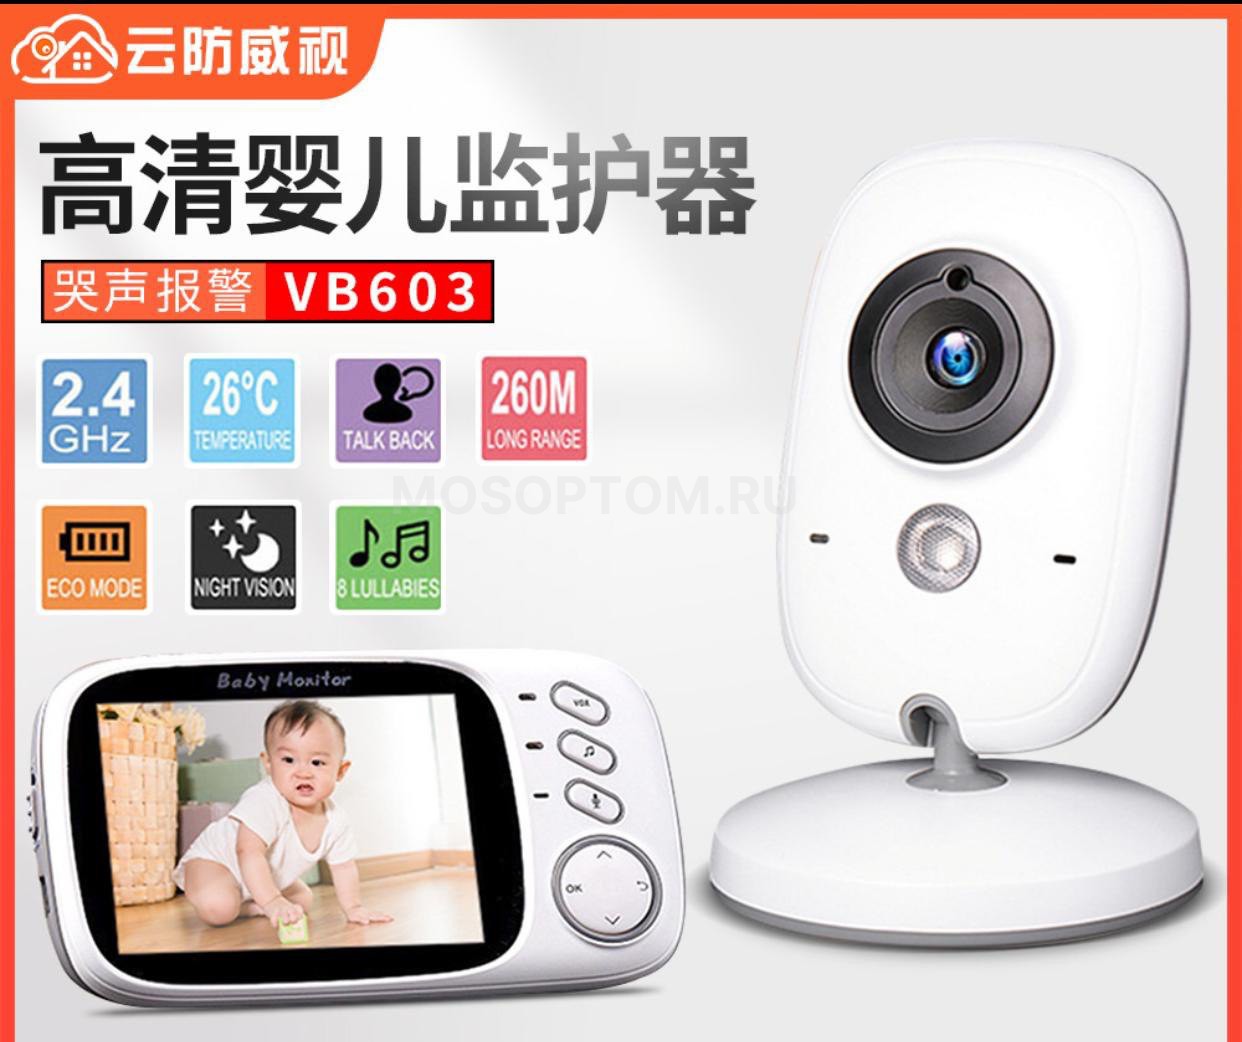 Беспроводная видеоняня Video Baby Monitor VB-603 с увеличенным радиусом действия, цветным экраном 3,2" высокого разрешения оптом - Фото №3